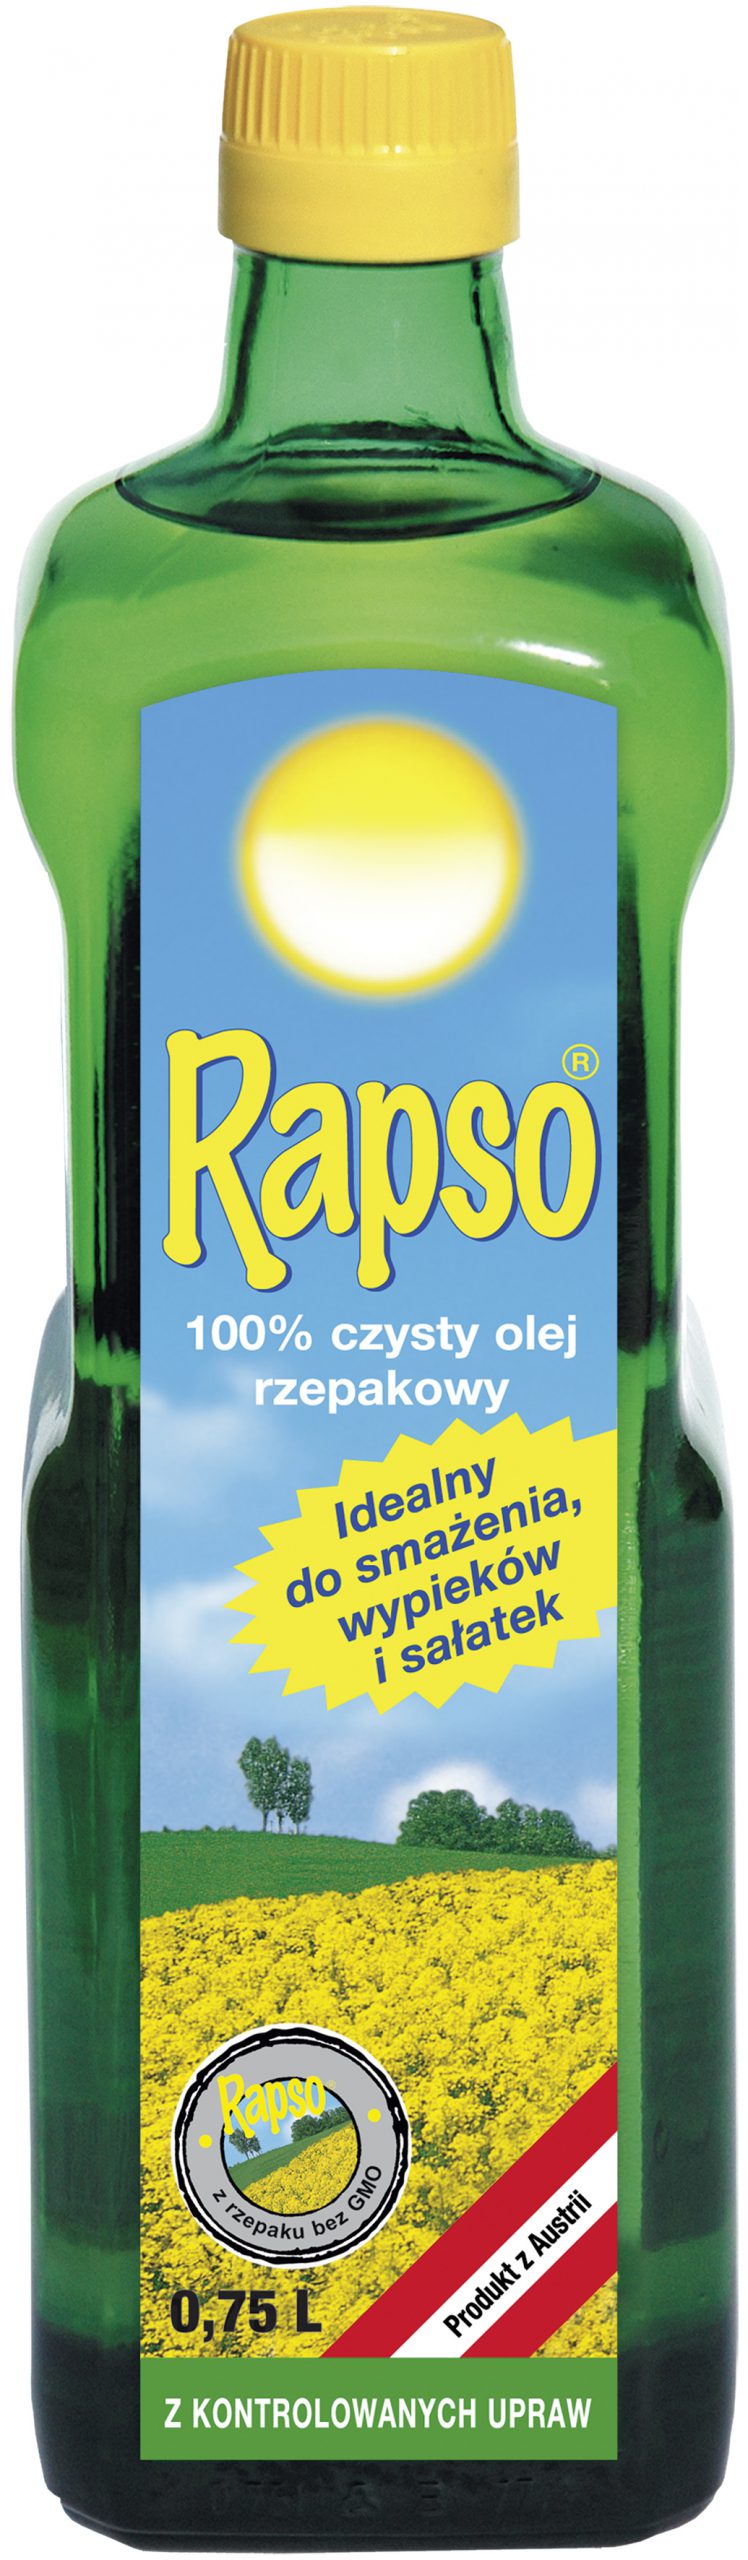 Olej rzepakowy marki Rapso